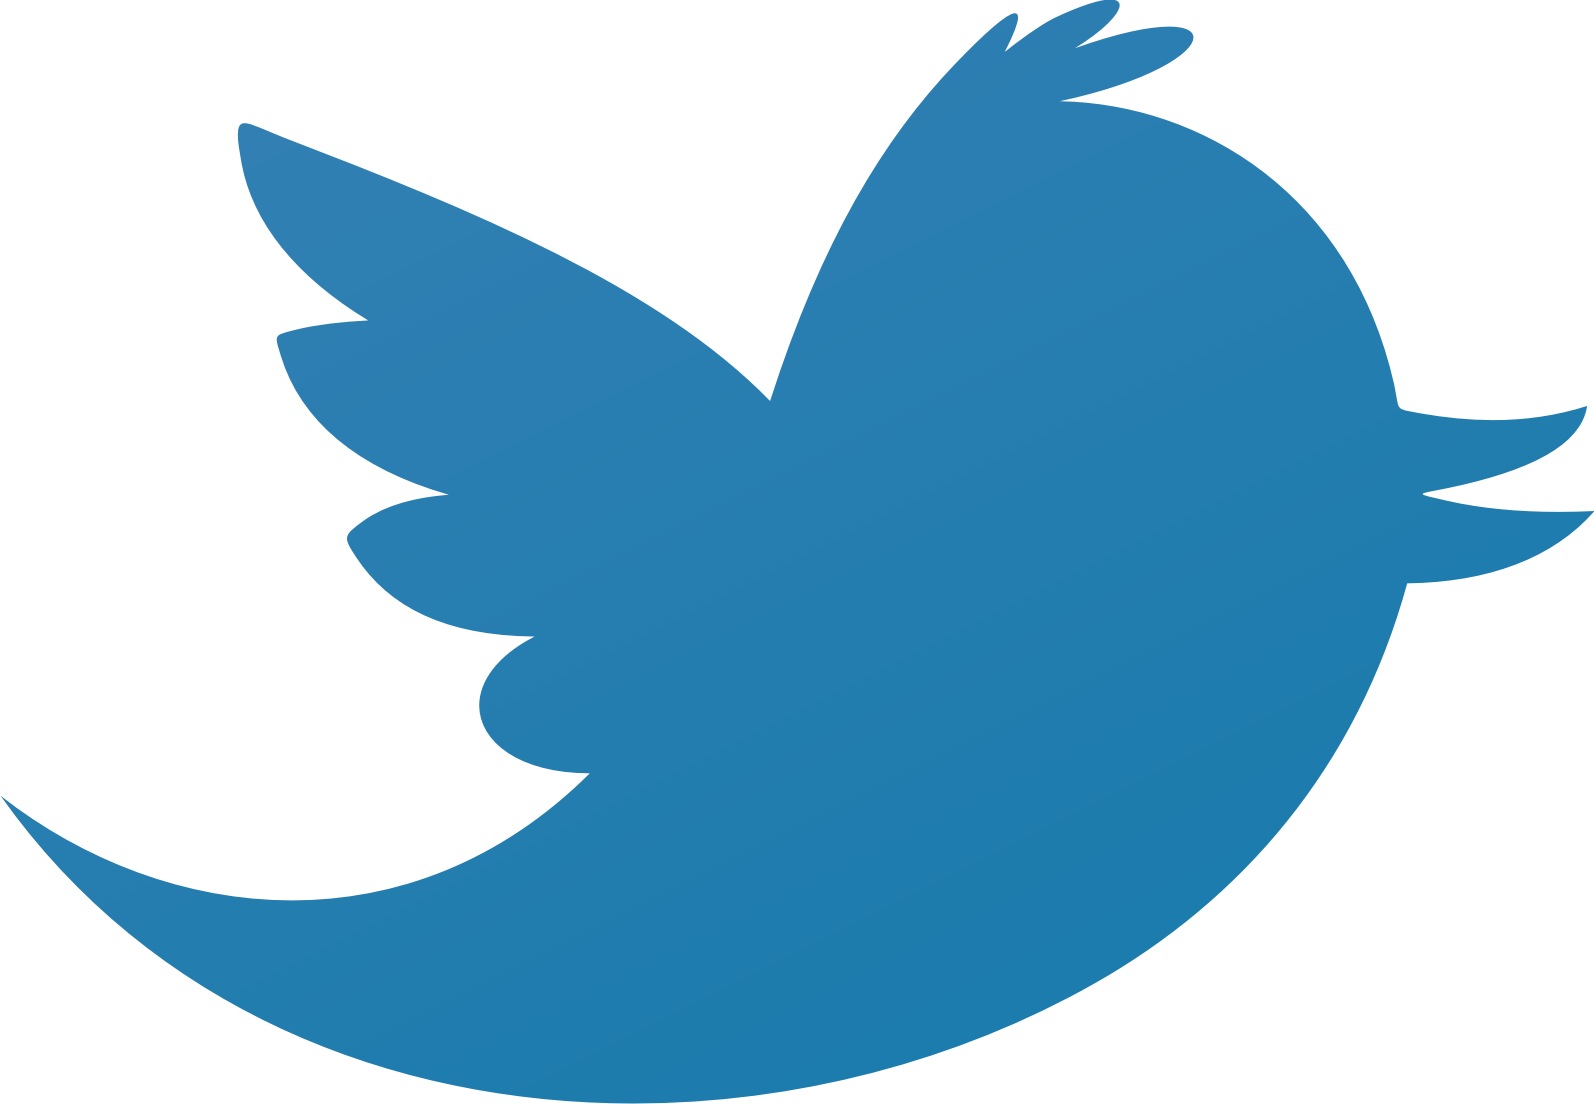 Berita Unik Si Burung Tweet Tweet Twitter 